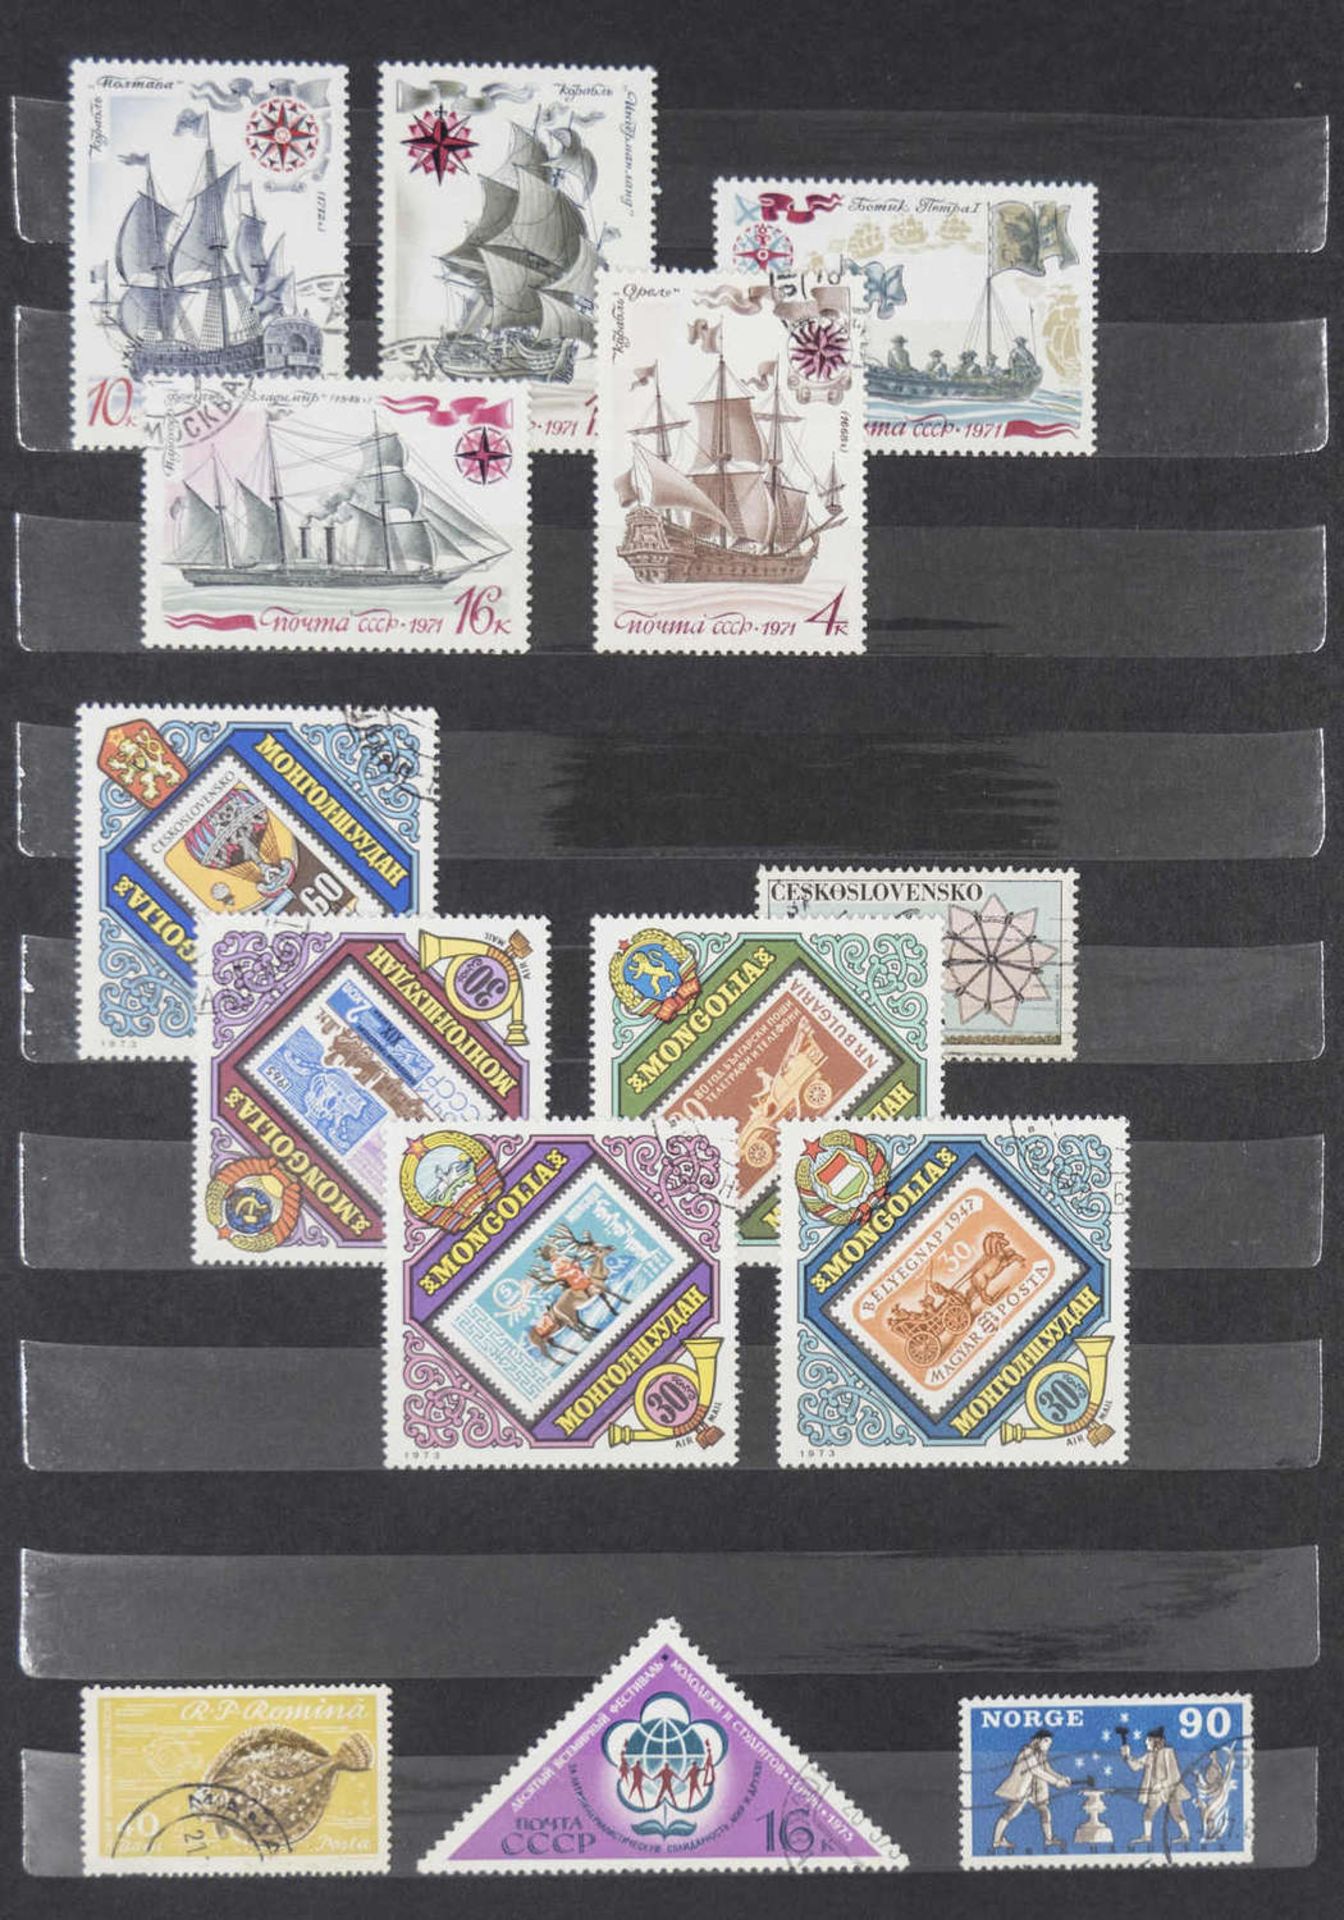 Steck - Album "alrabra" mit Briefmarken - Sammlung aus aller Welt. Überwiegend gestempelt. Eine - Bild 11 aus 13